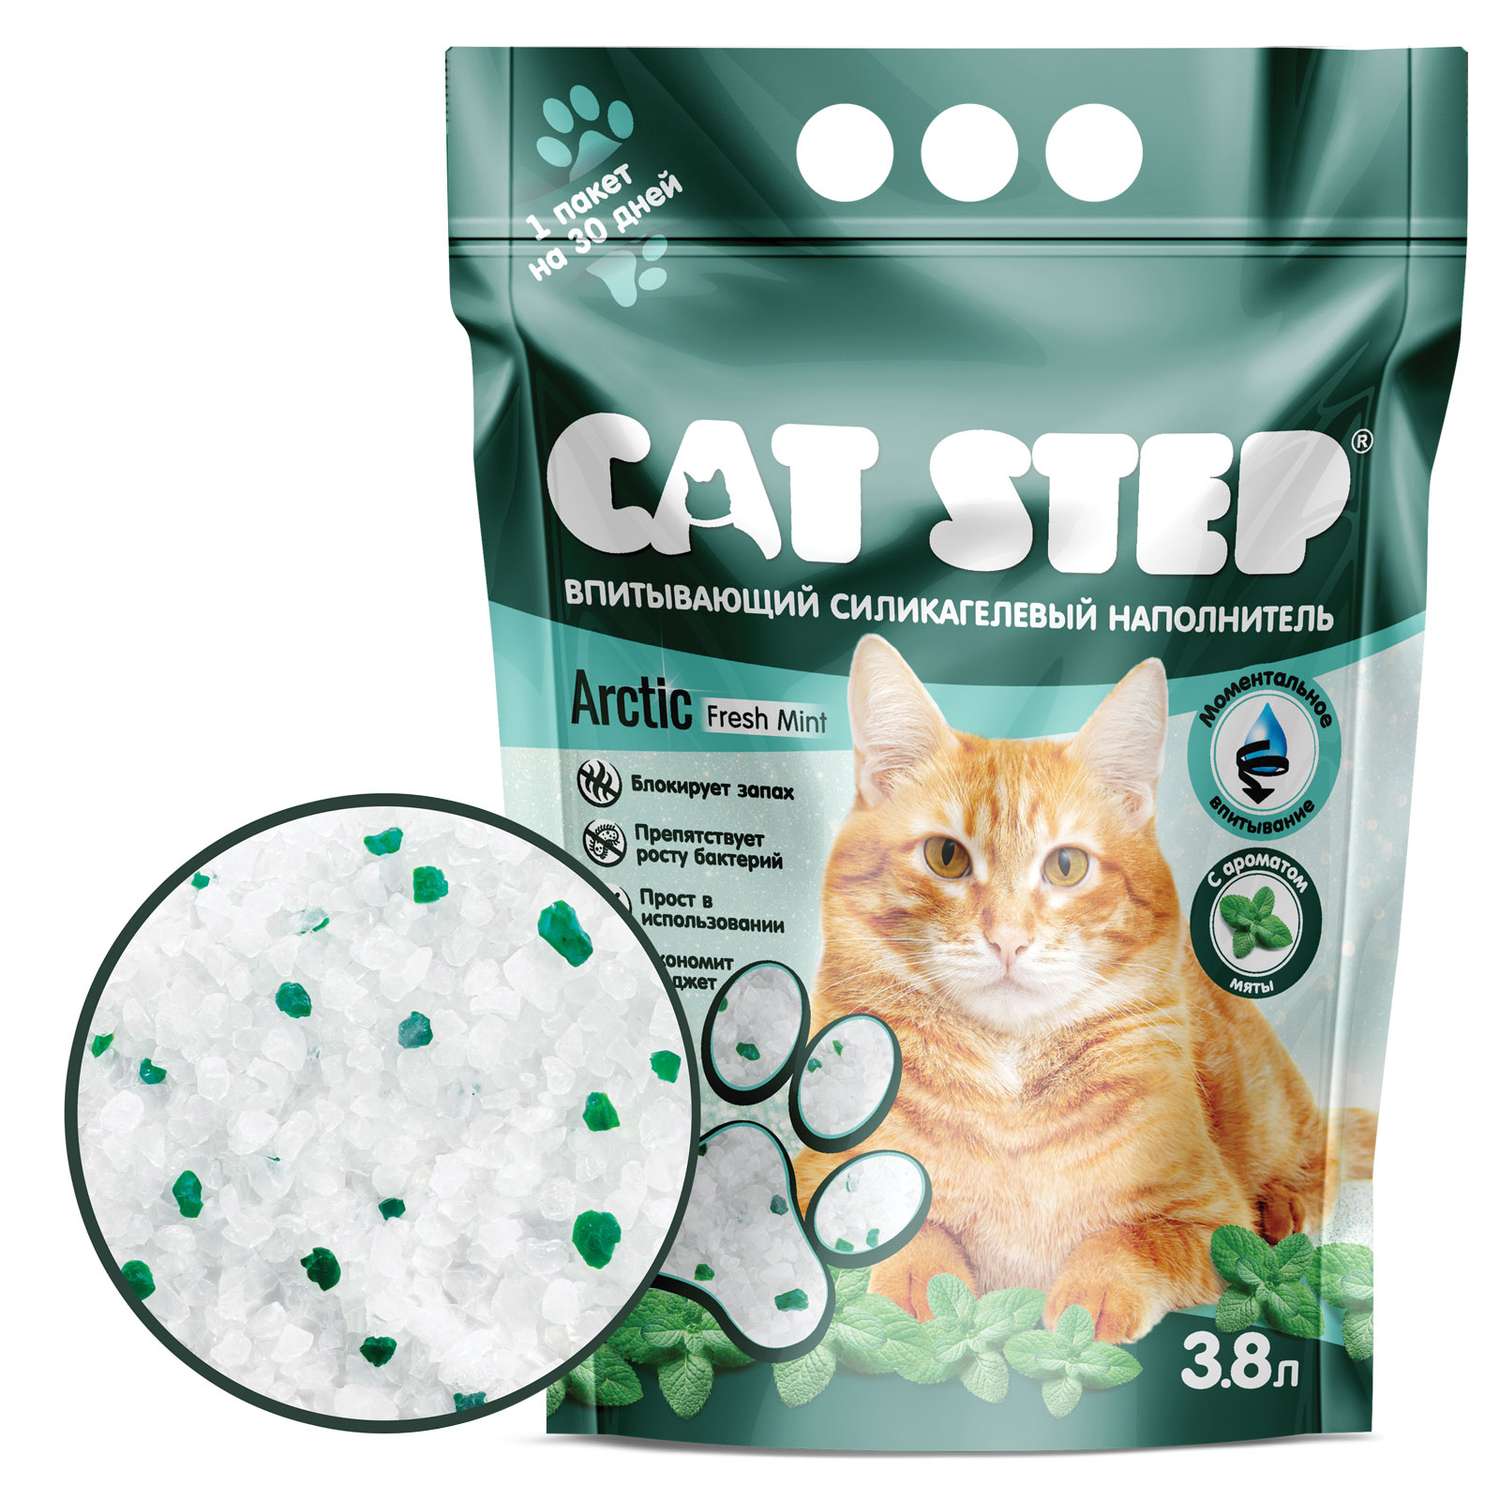 Наполнитель для кошек Cat Step Arctic Fresh Mint впитывающий силикагелевый 3.8л - фото 1